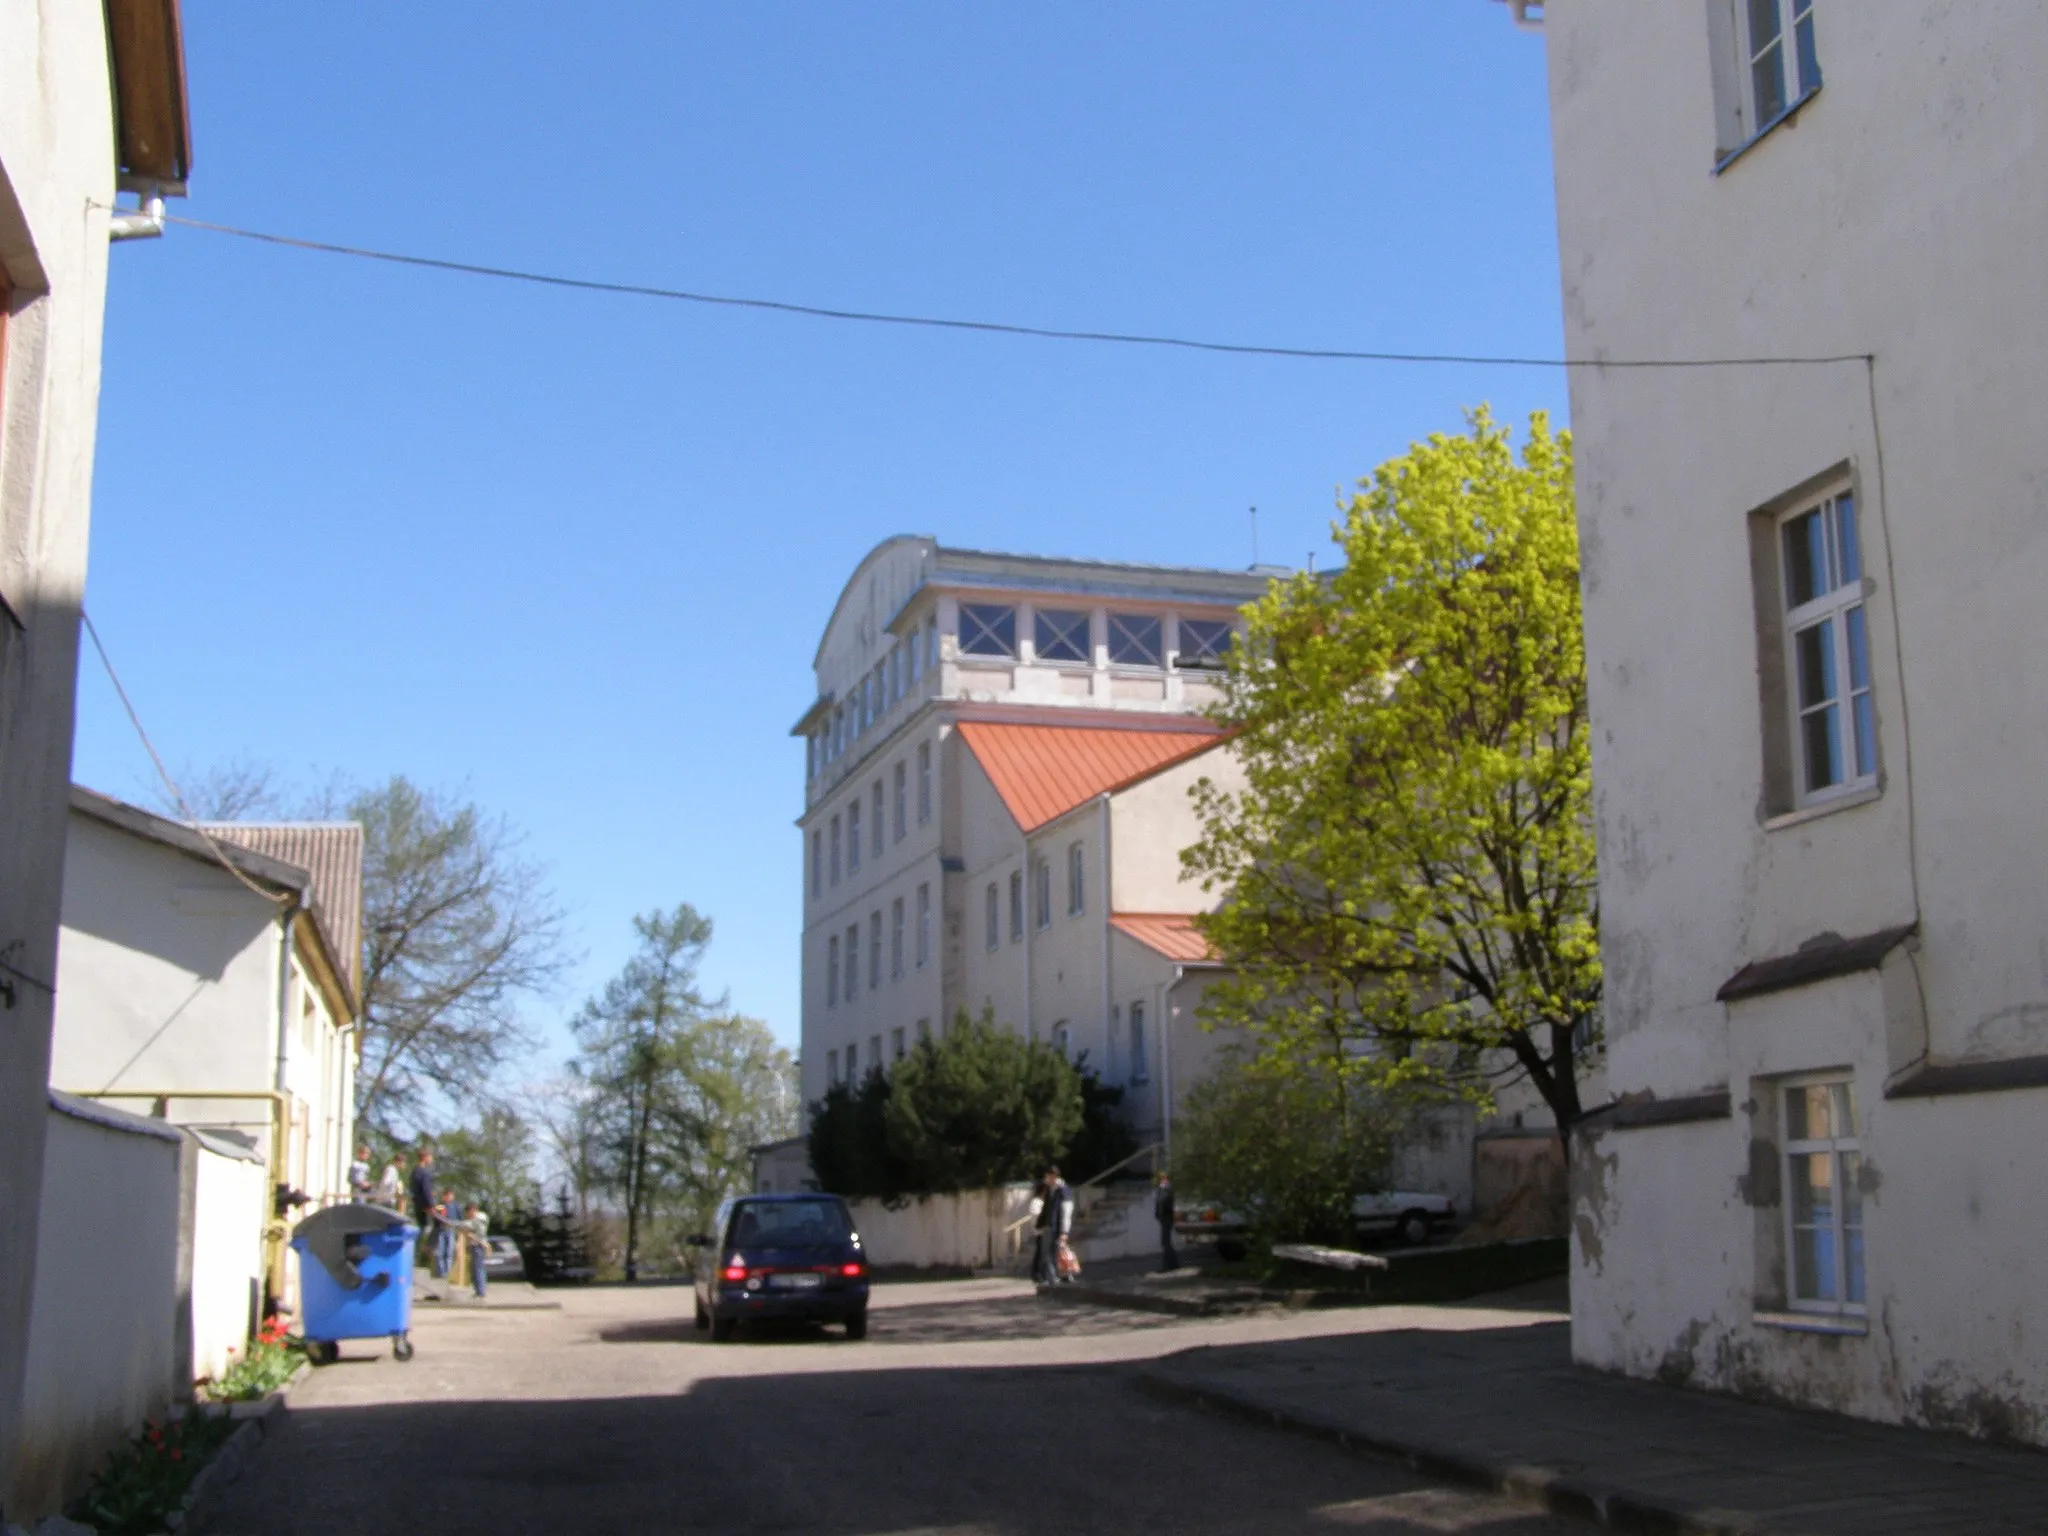 Zdjęcie: Vidurio ir vakarų Lietuvos regionas